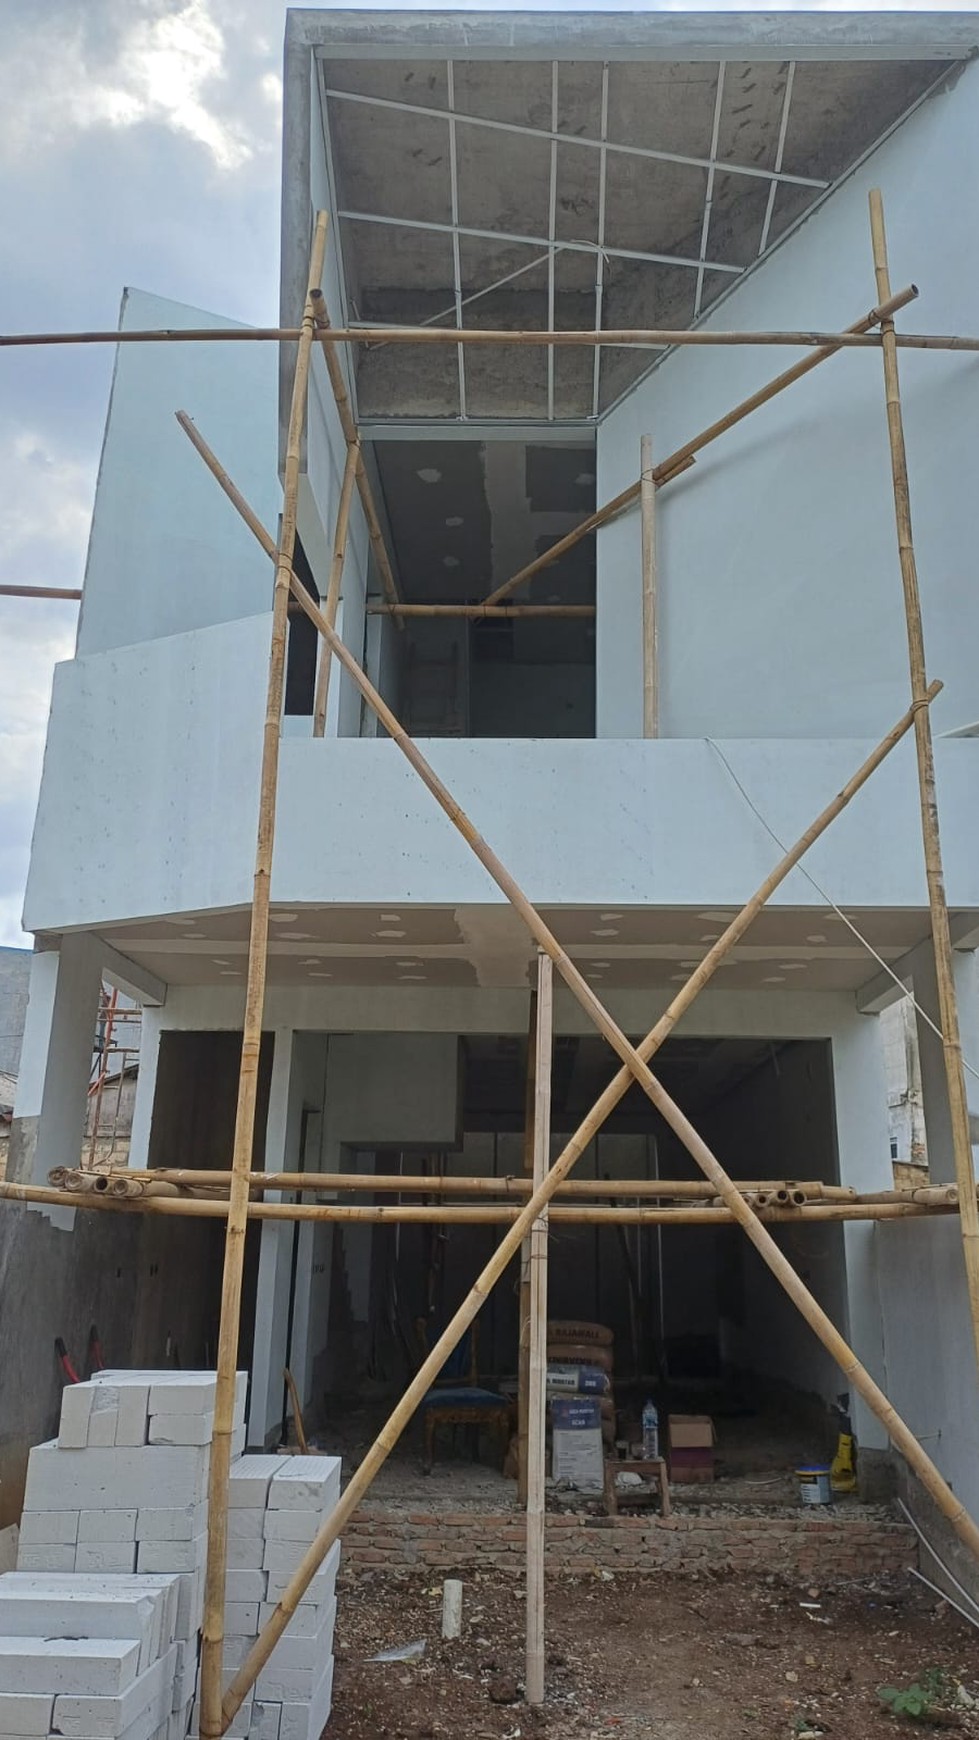 Rumah Brand New, bebas banjir di Pondok Cabe